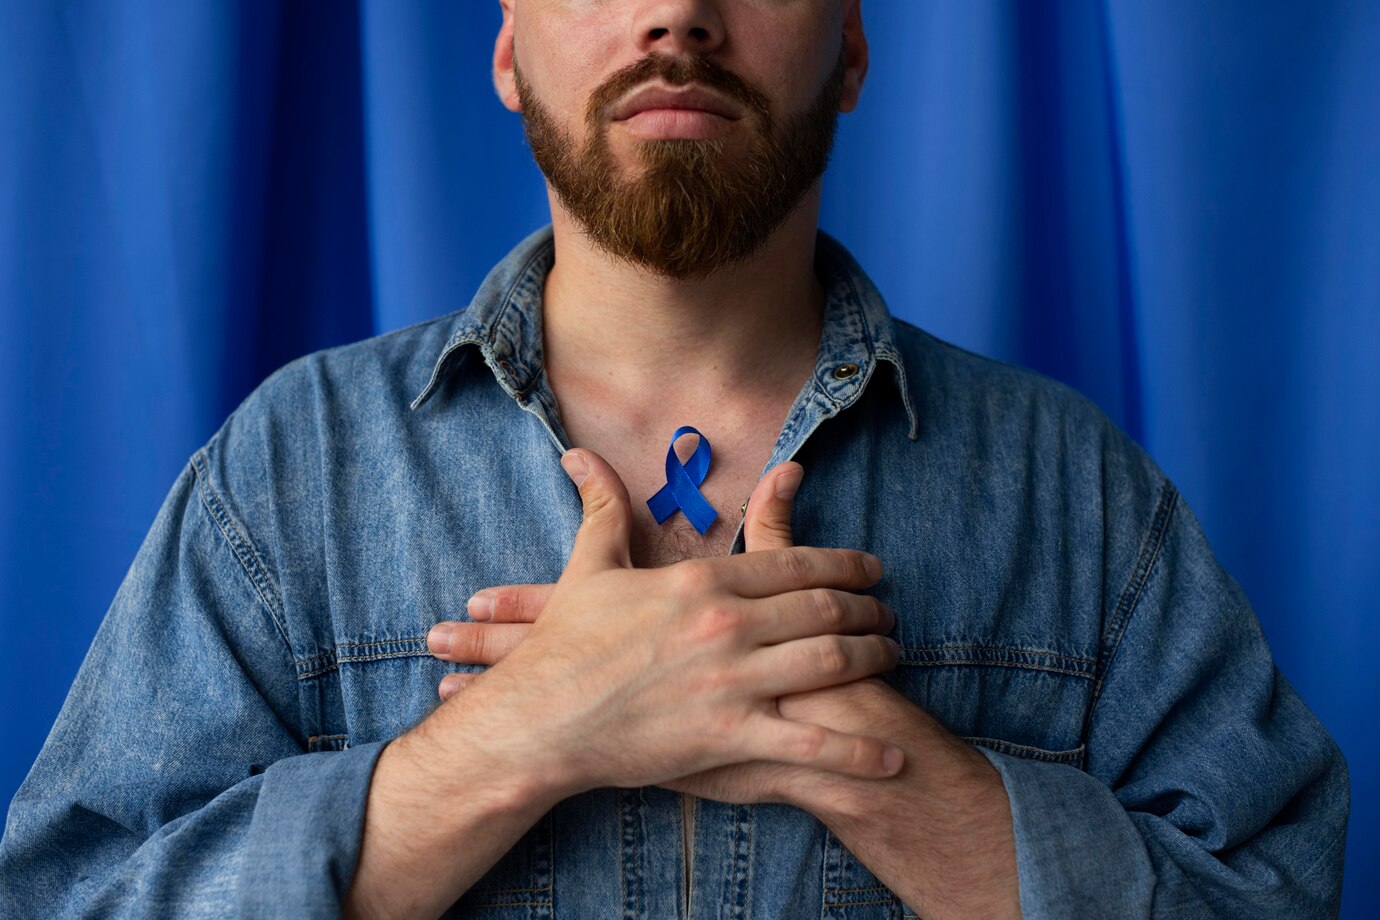 Ung thư vú ở nam giới thường được phát hiện muộn 